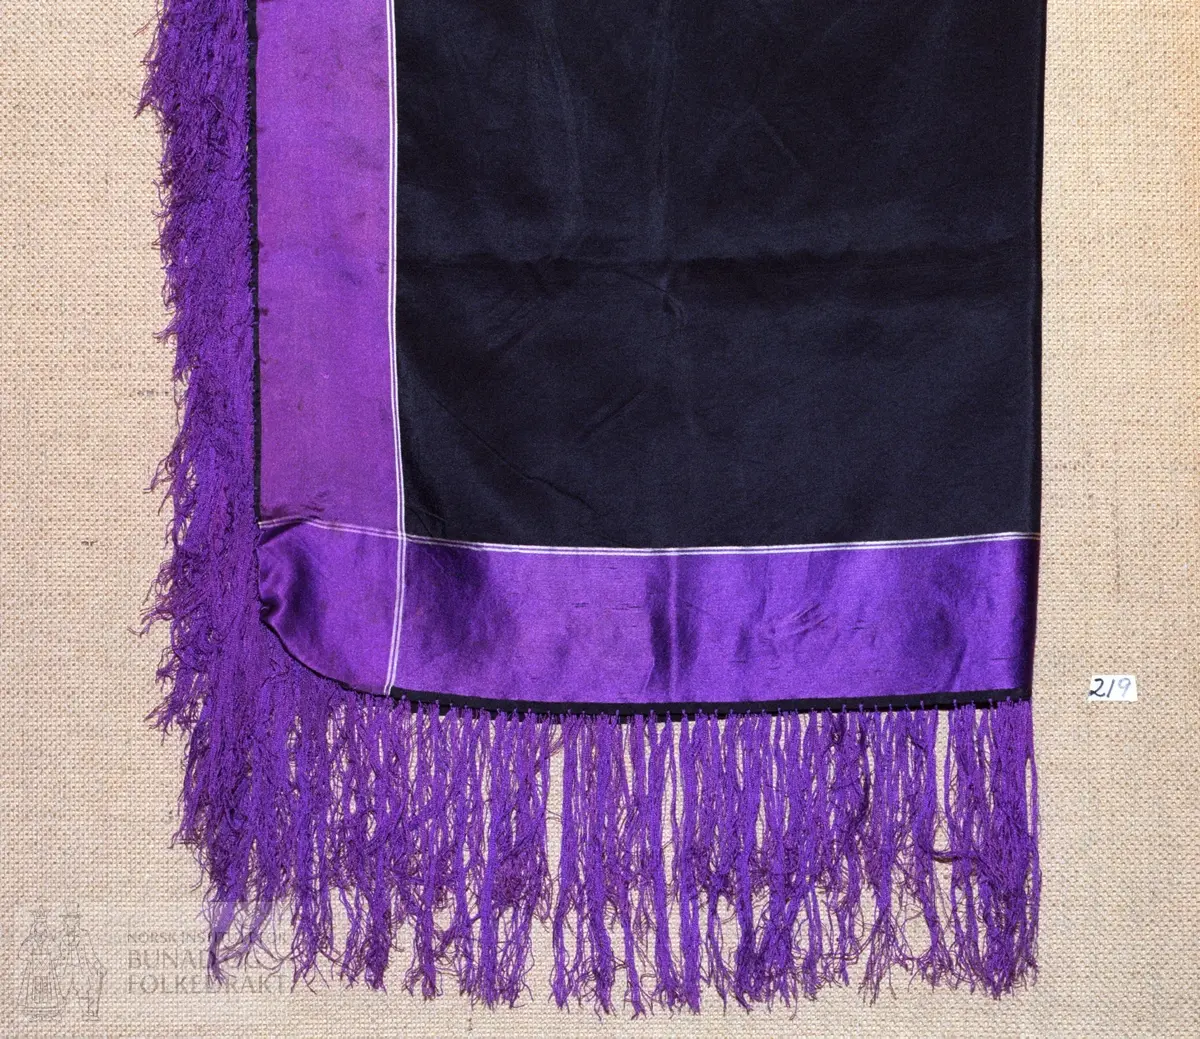 Svart silketørkle med fiolette stripar langs kantane. Påsette fiolette silkefrynser, 13 cm lange.  Storleik:  78 x 81 cm.